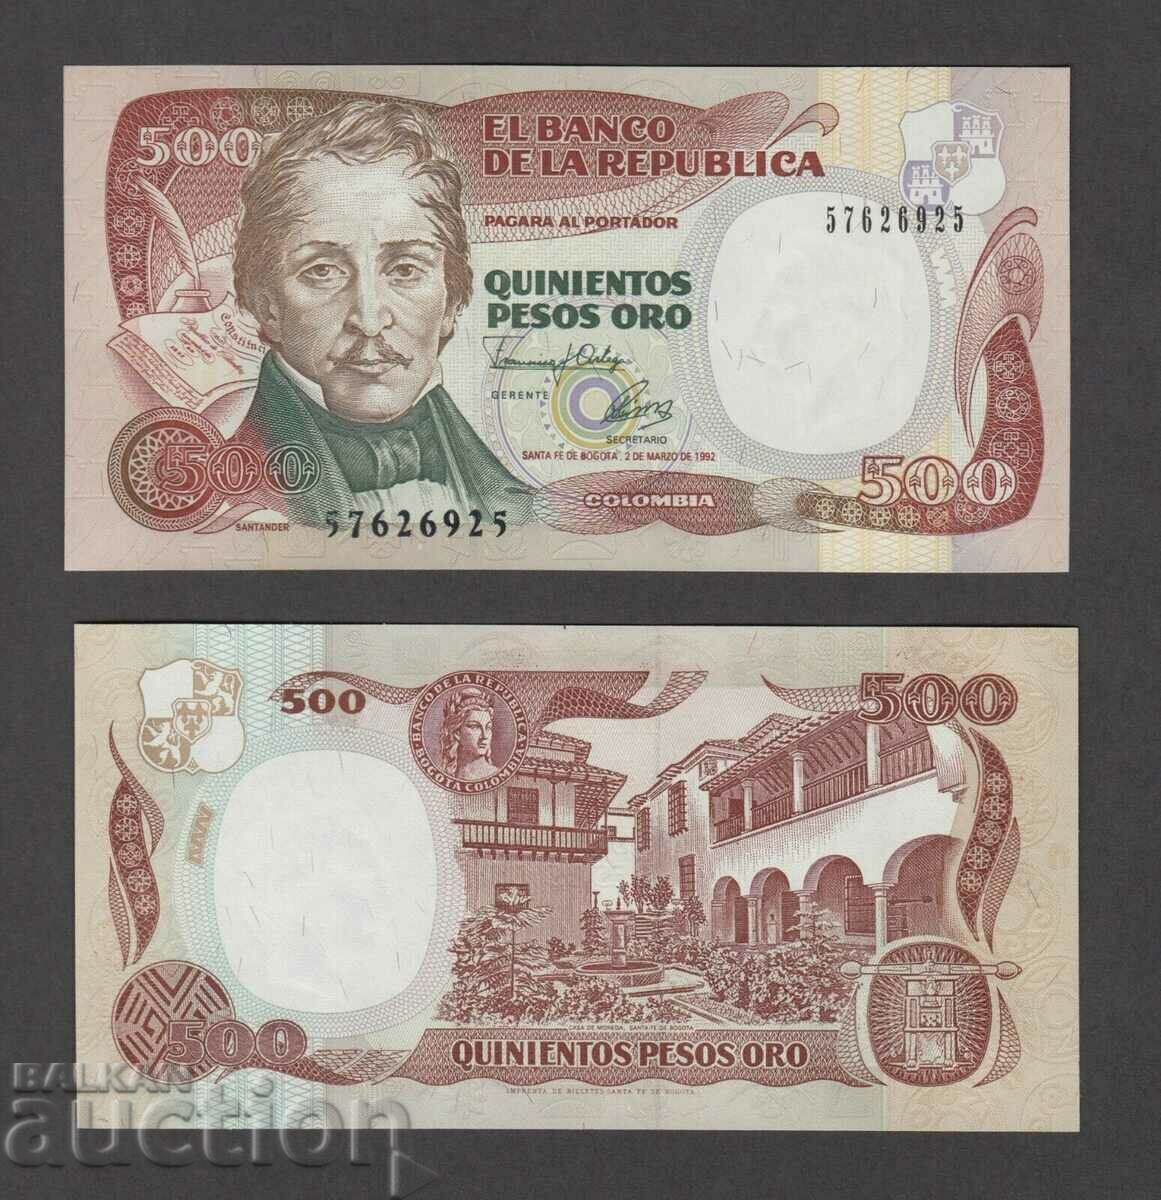 COLOMBIA, 500 pesos, 1992, UNC